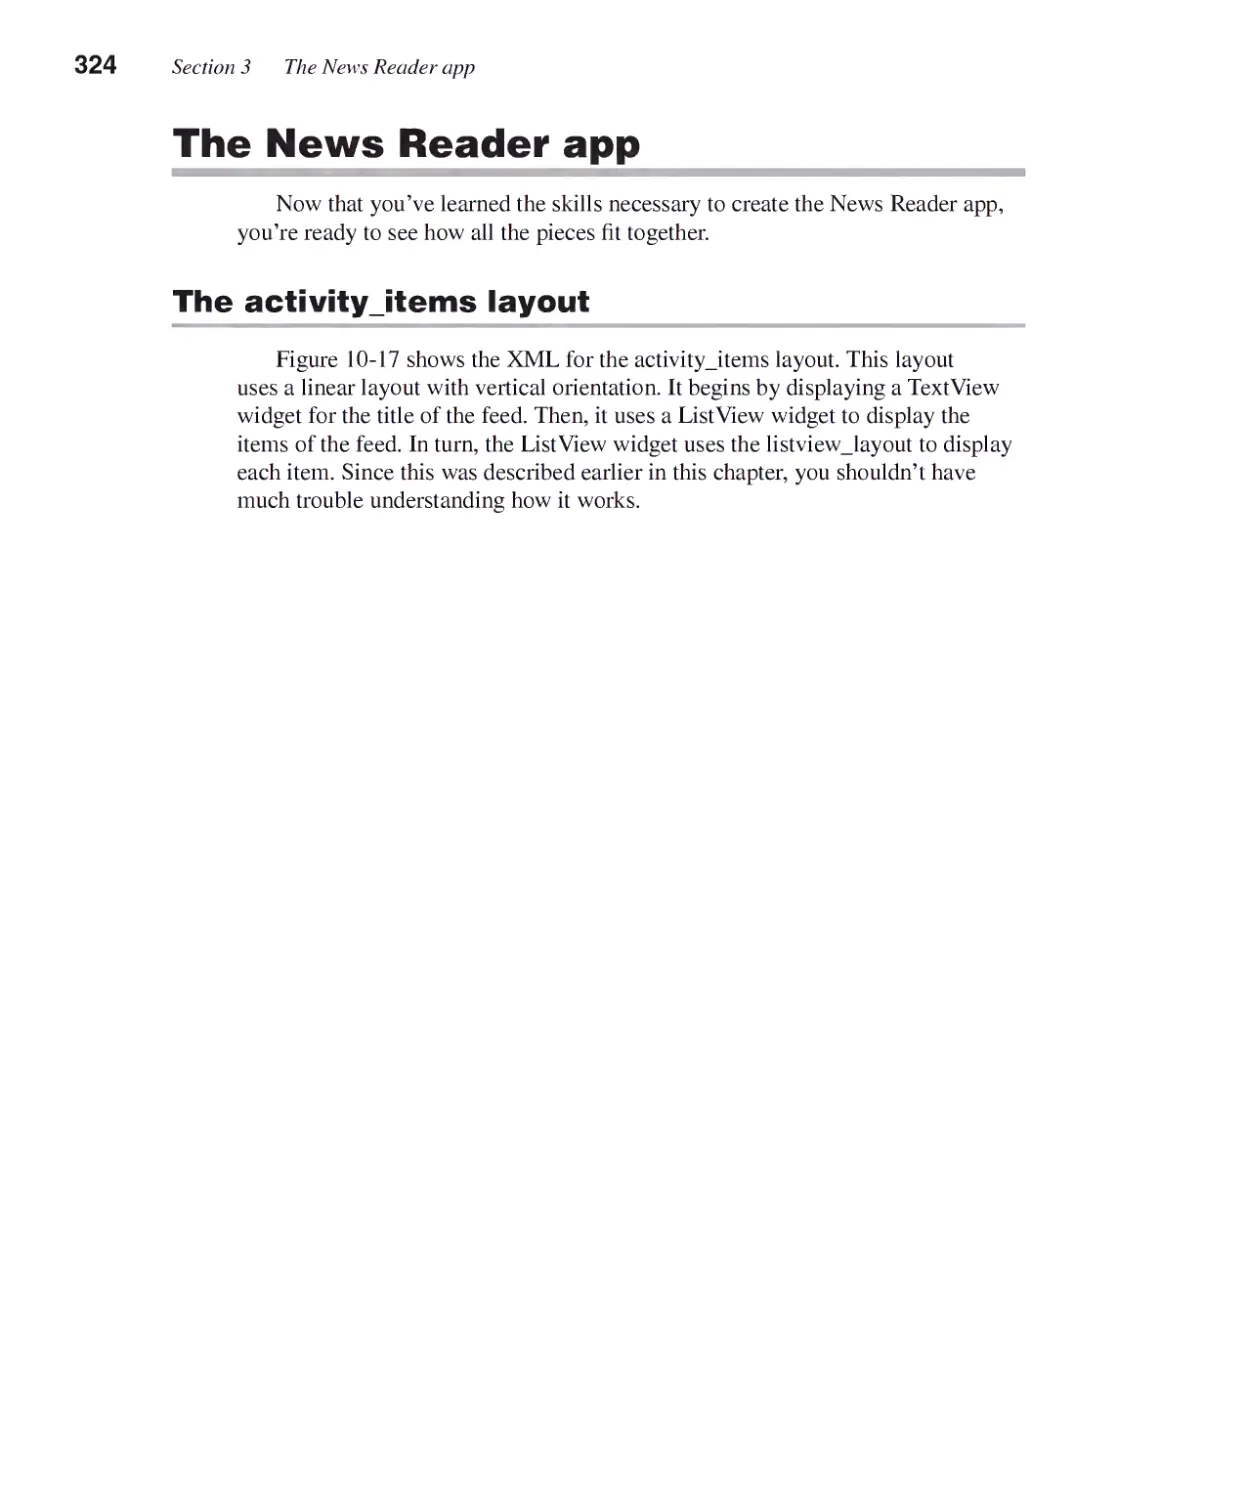 The News Reader App